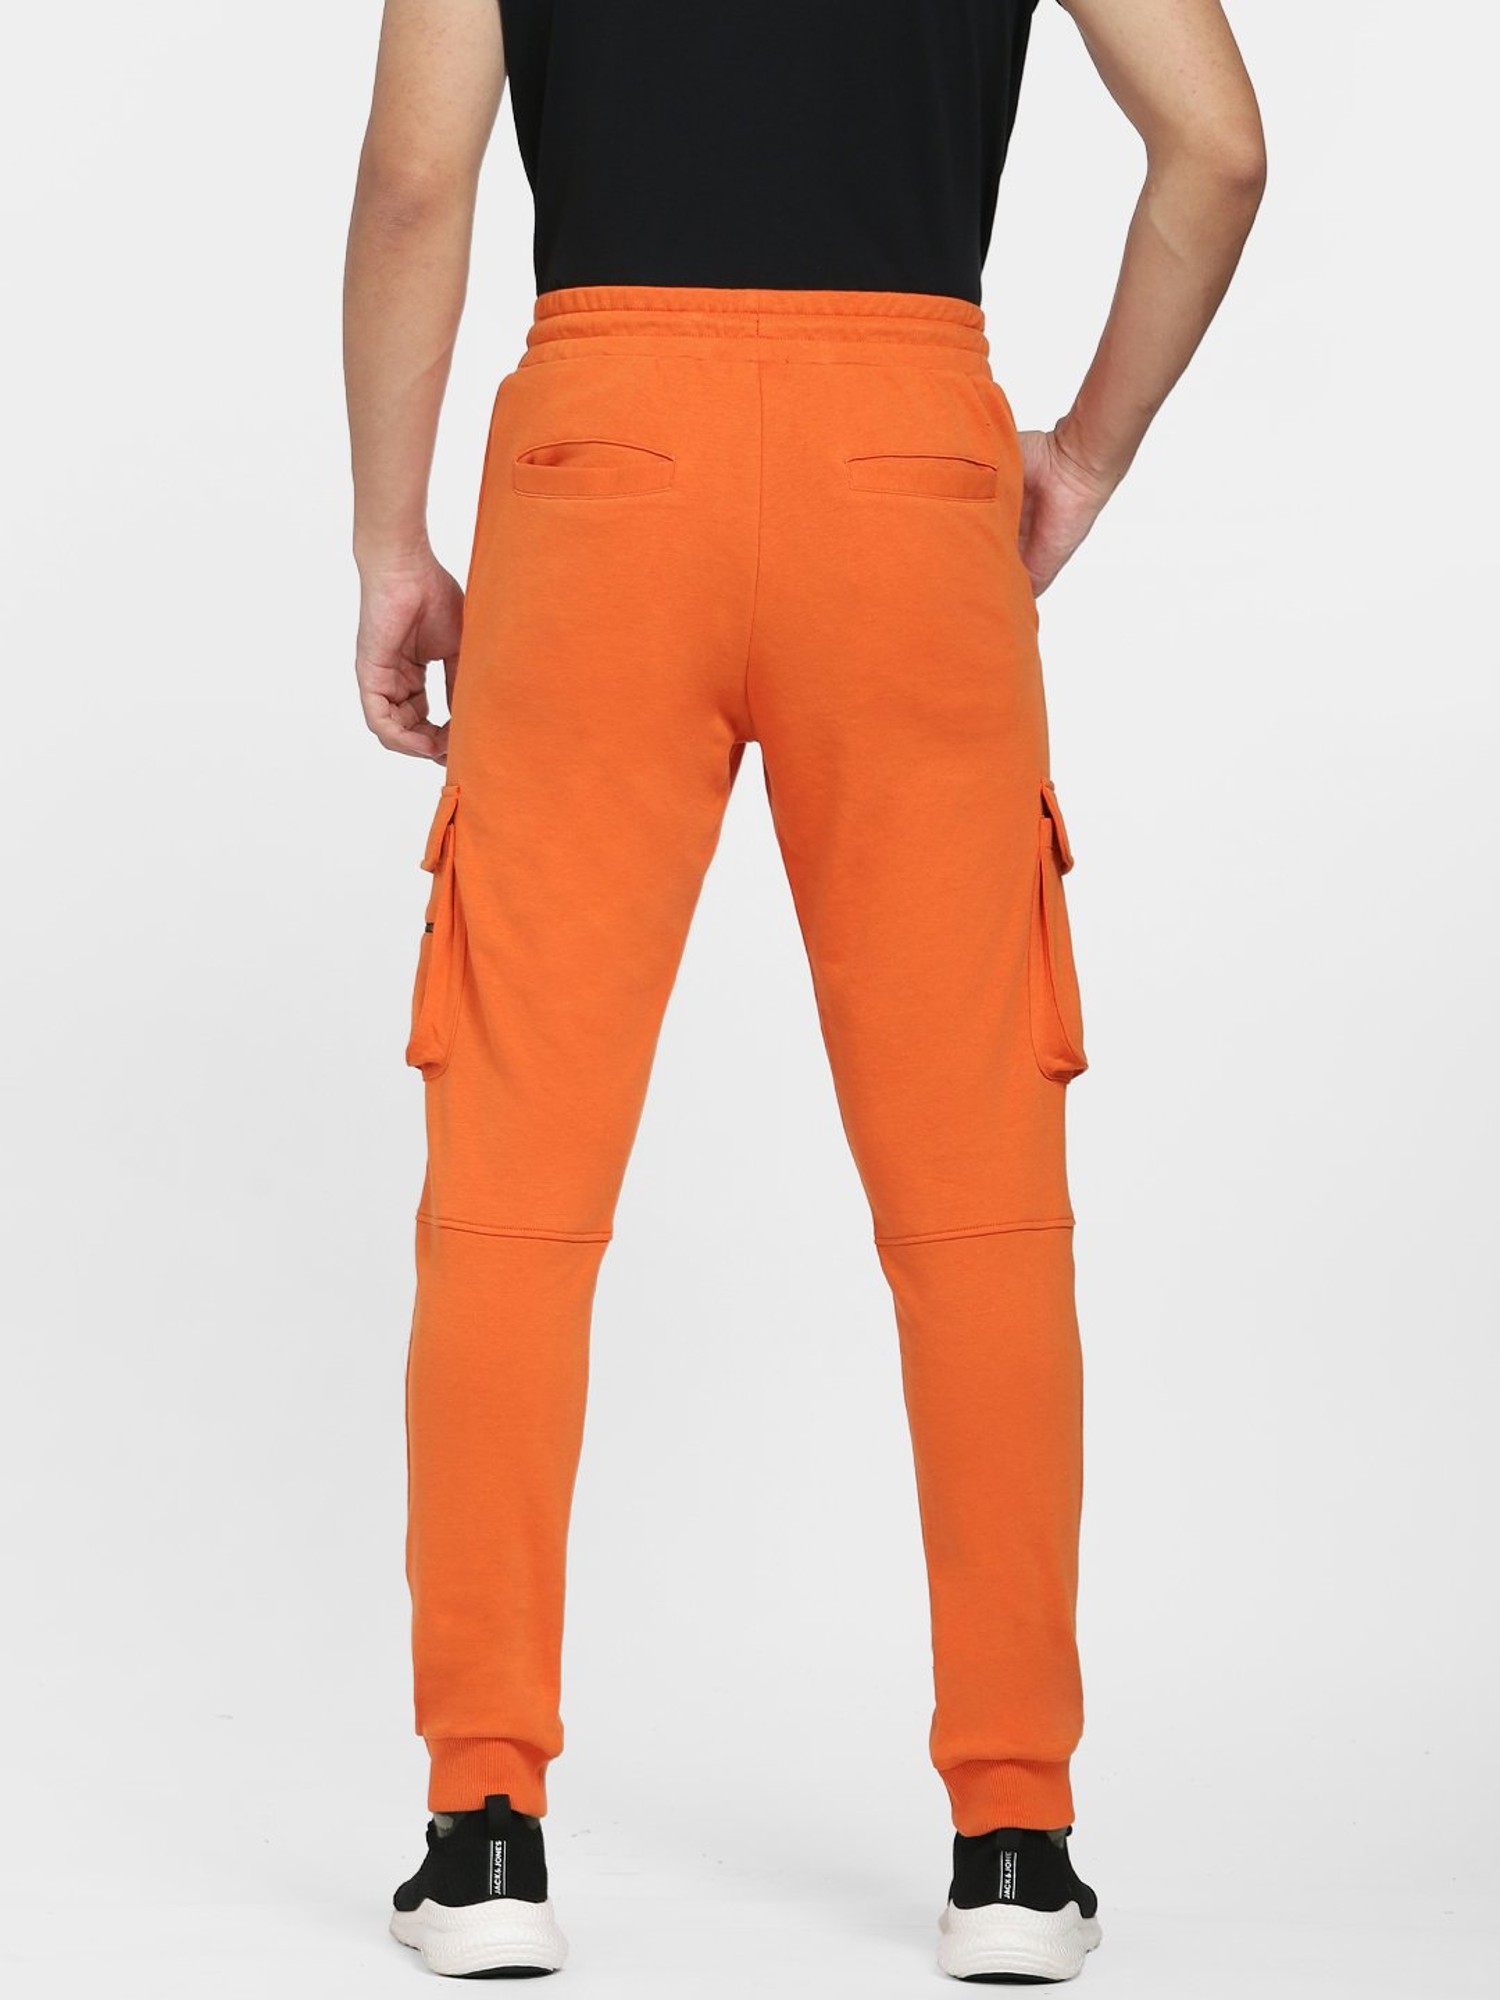 Stylish Orange Cargo Pants For Comfort  Alibabacom